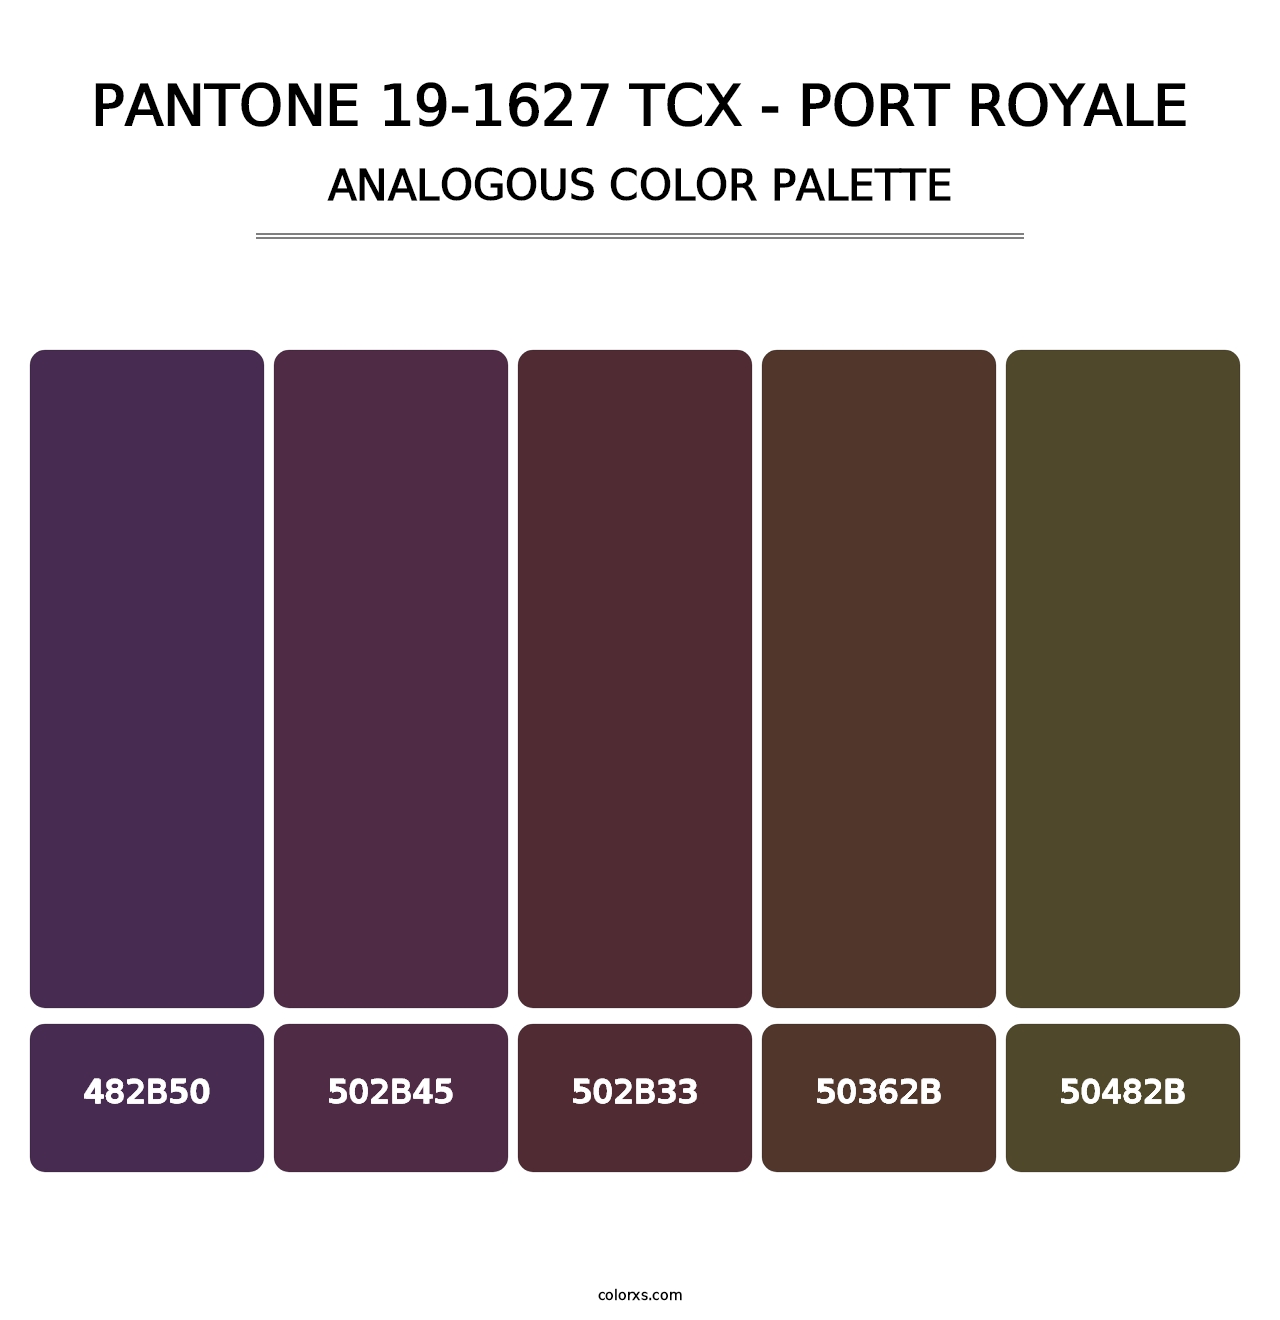 PANTONE 19-1627 TCX - Port Royale - Analogous Color Palette